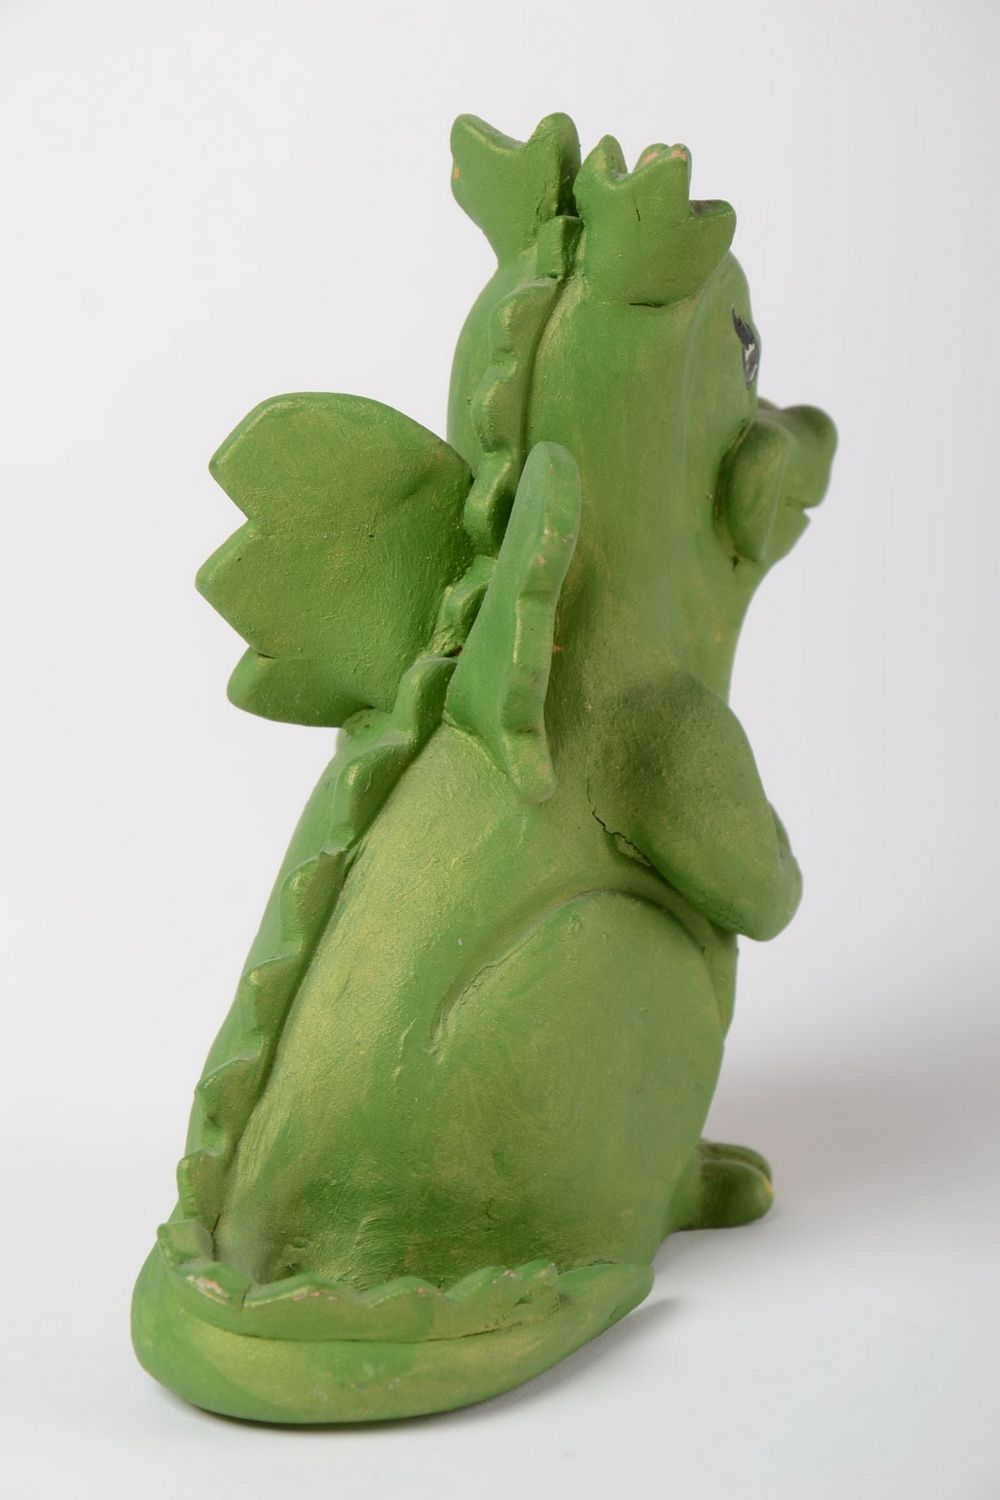 Глиняная статуэтка расписанная акриловыми красками в виде дракона ручной работы фото 3